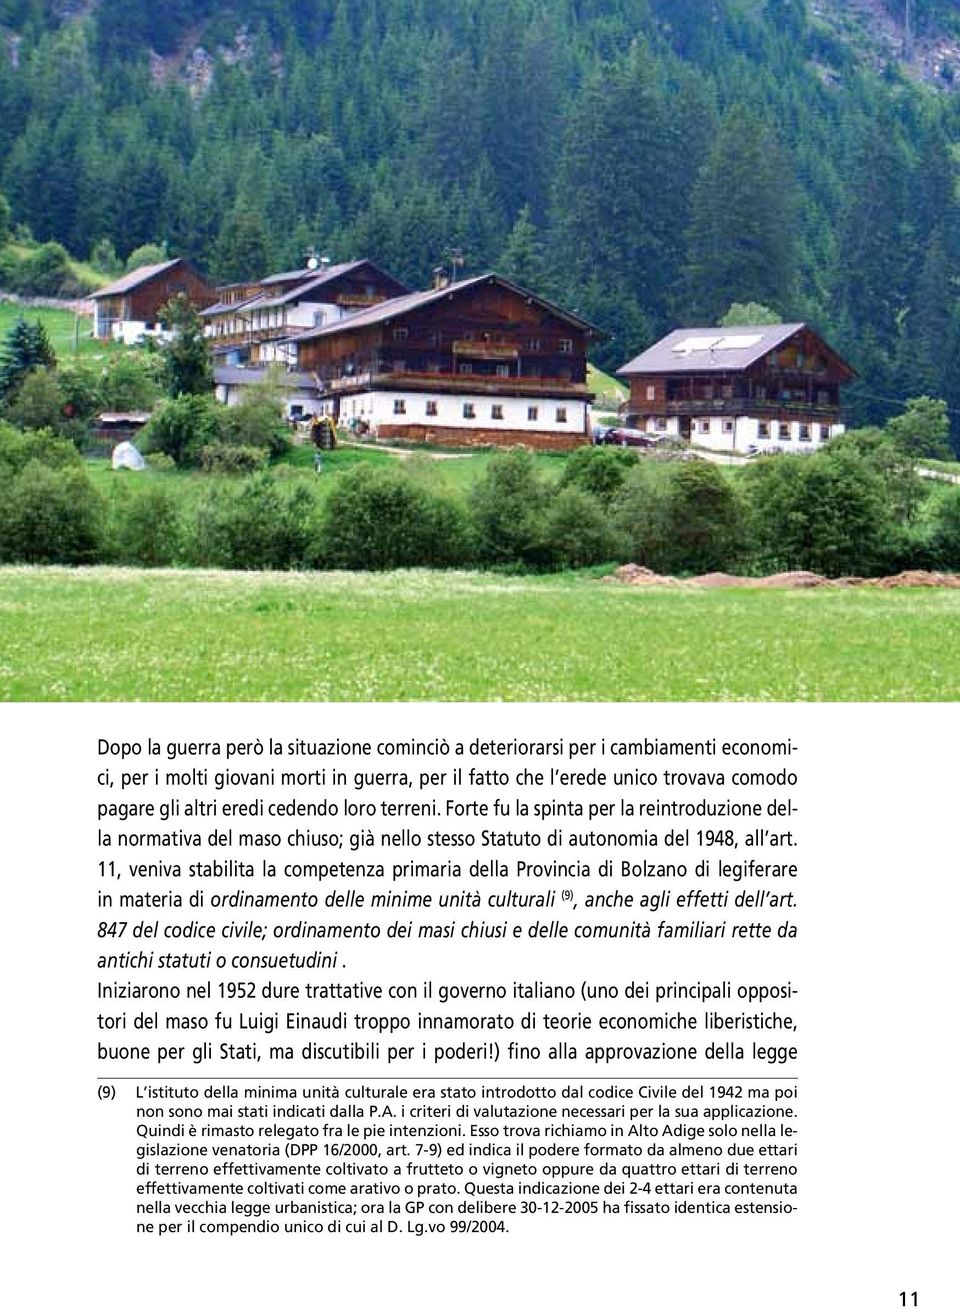 11, veniva stabilita la competenza primaria della Provincia di Bolzano di legiferare in materia di ordinamento delle minime unità culturali (9), anche agli effetti dell art.